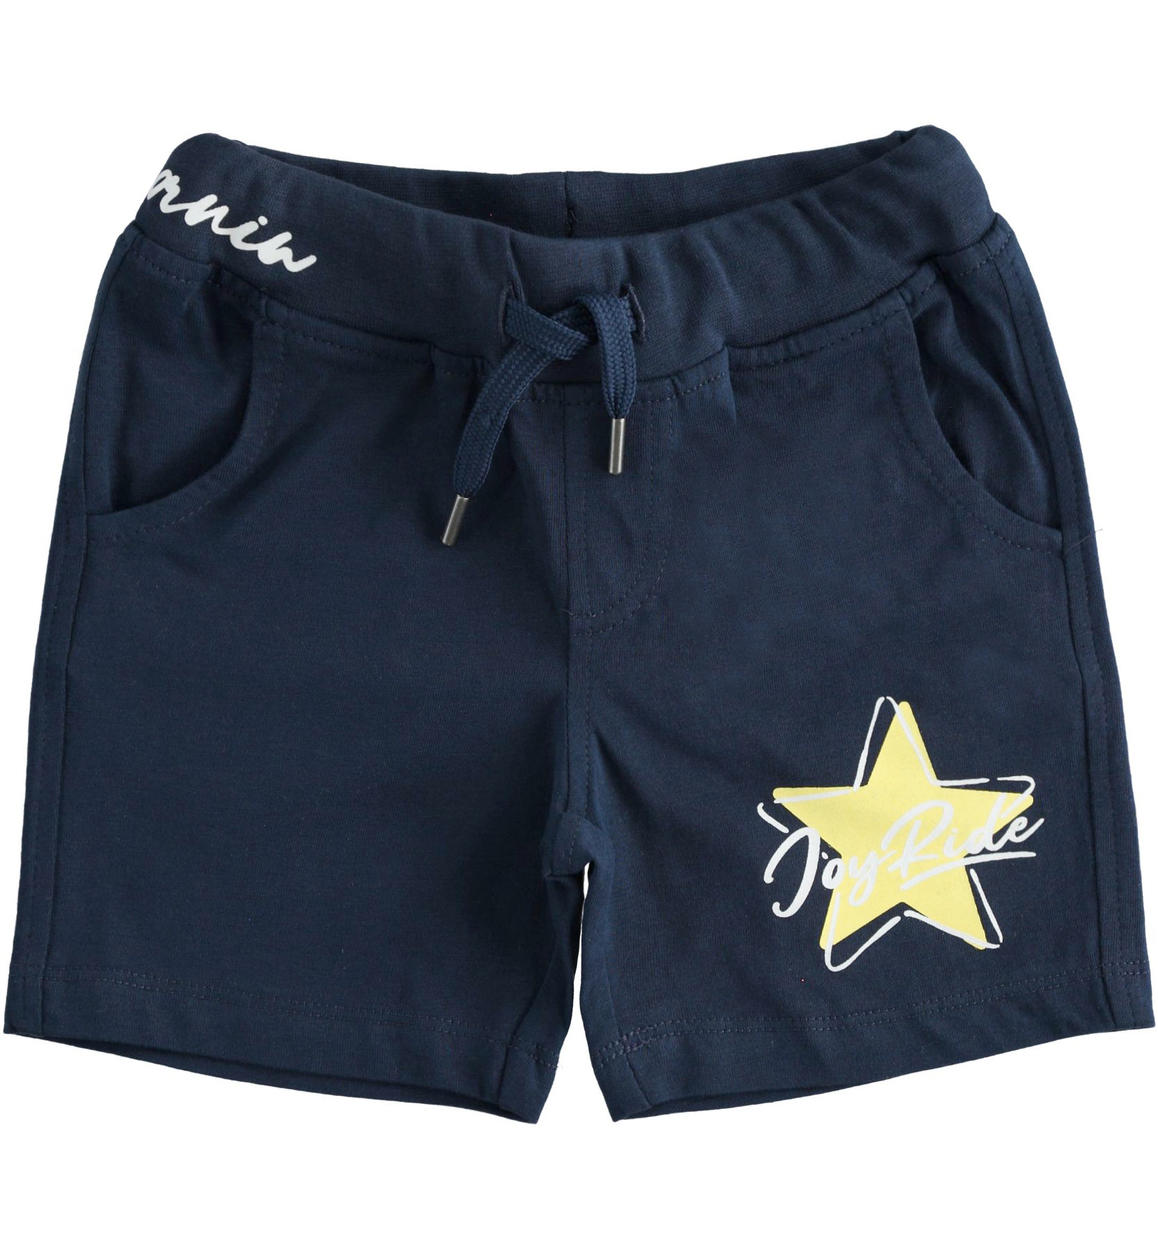 Pantalone corto con stella per bambino BLU iDO